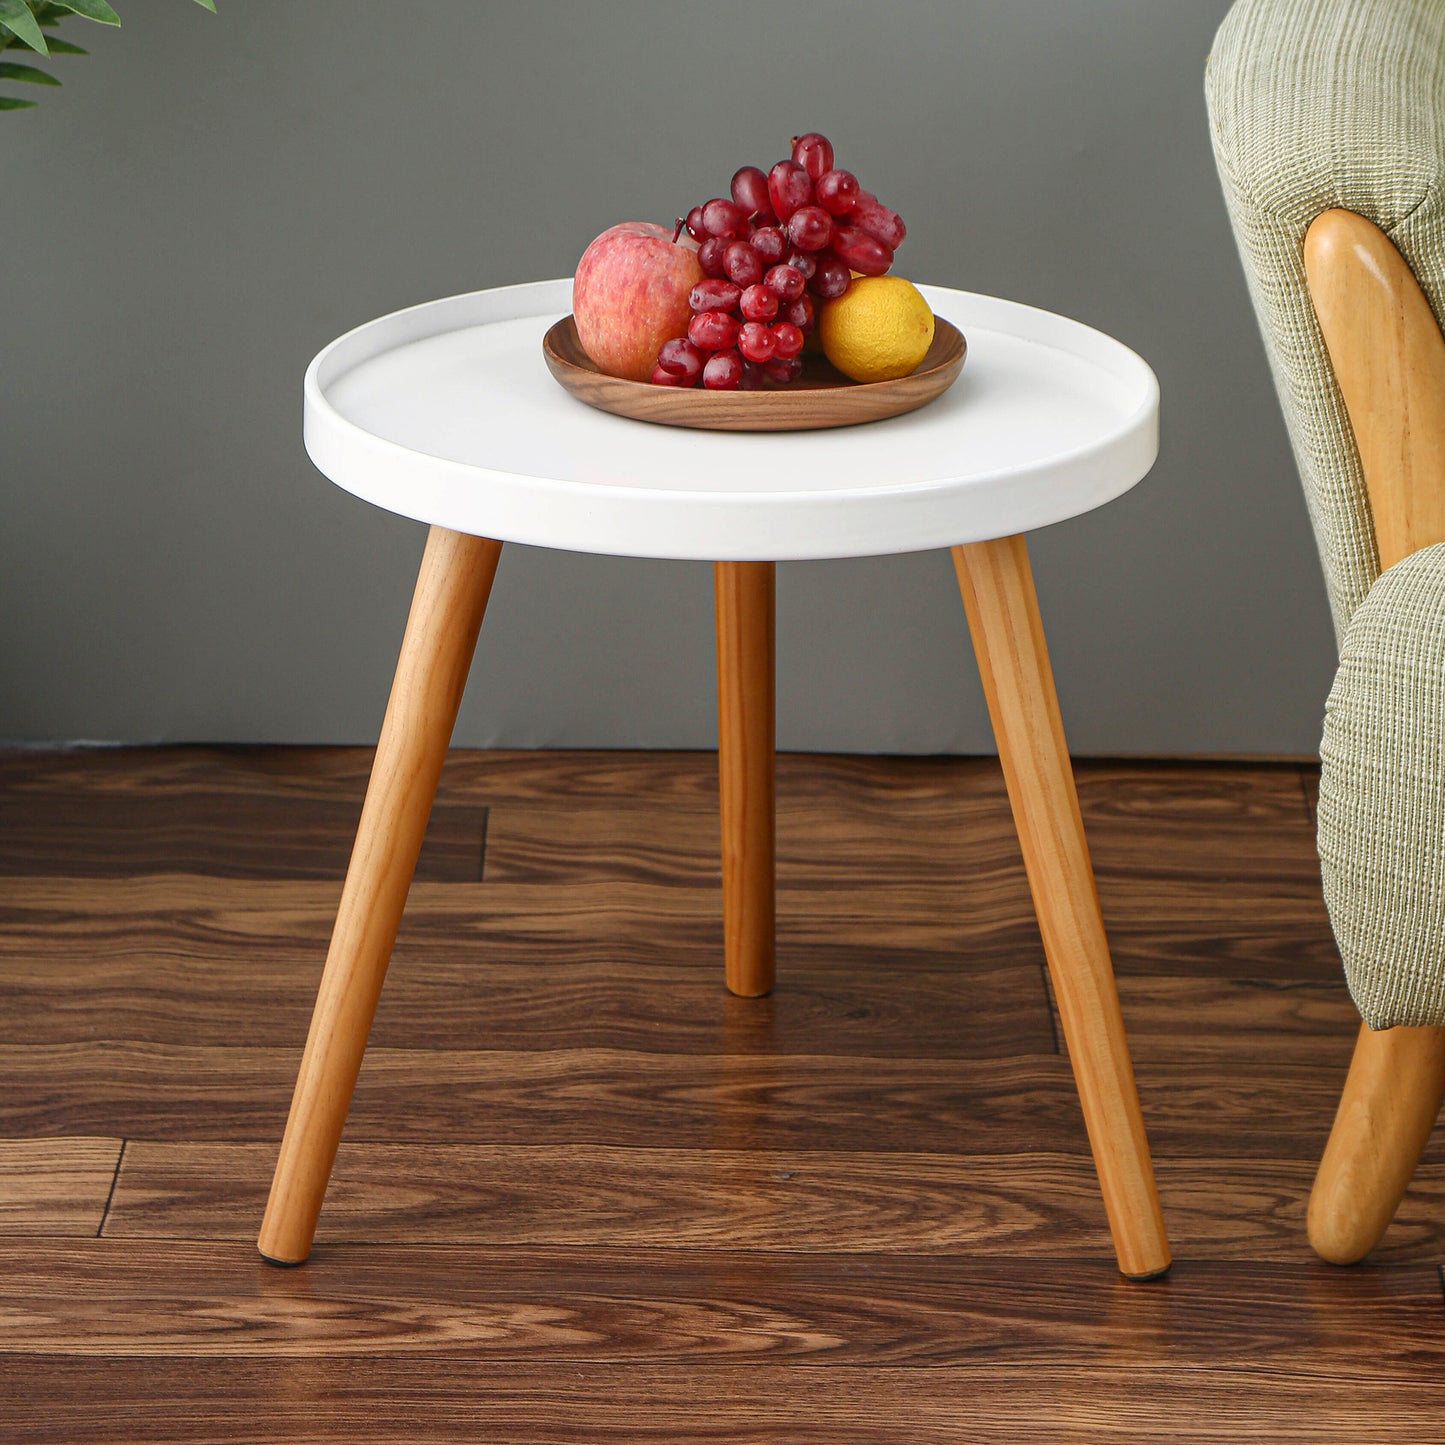 Baliya Solid Mango Wood Sideboard In Walnut For Lining Room Furniture